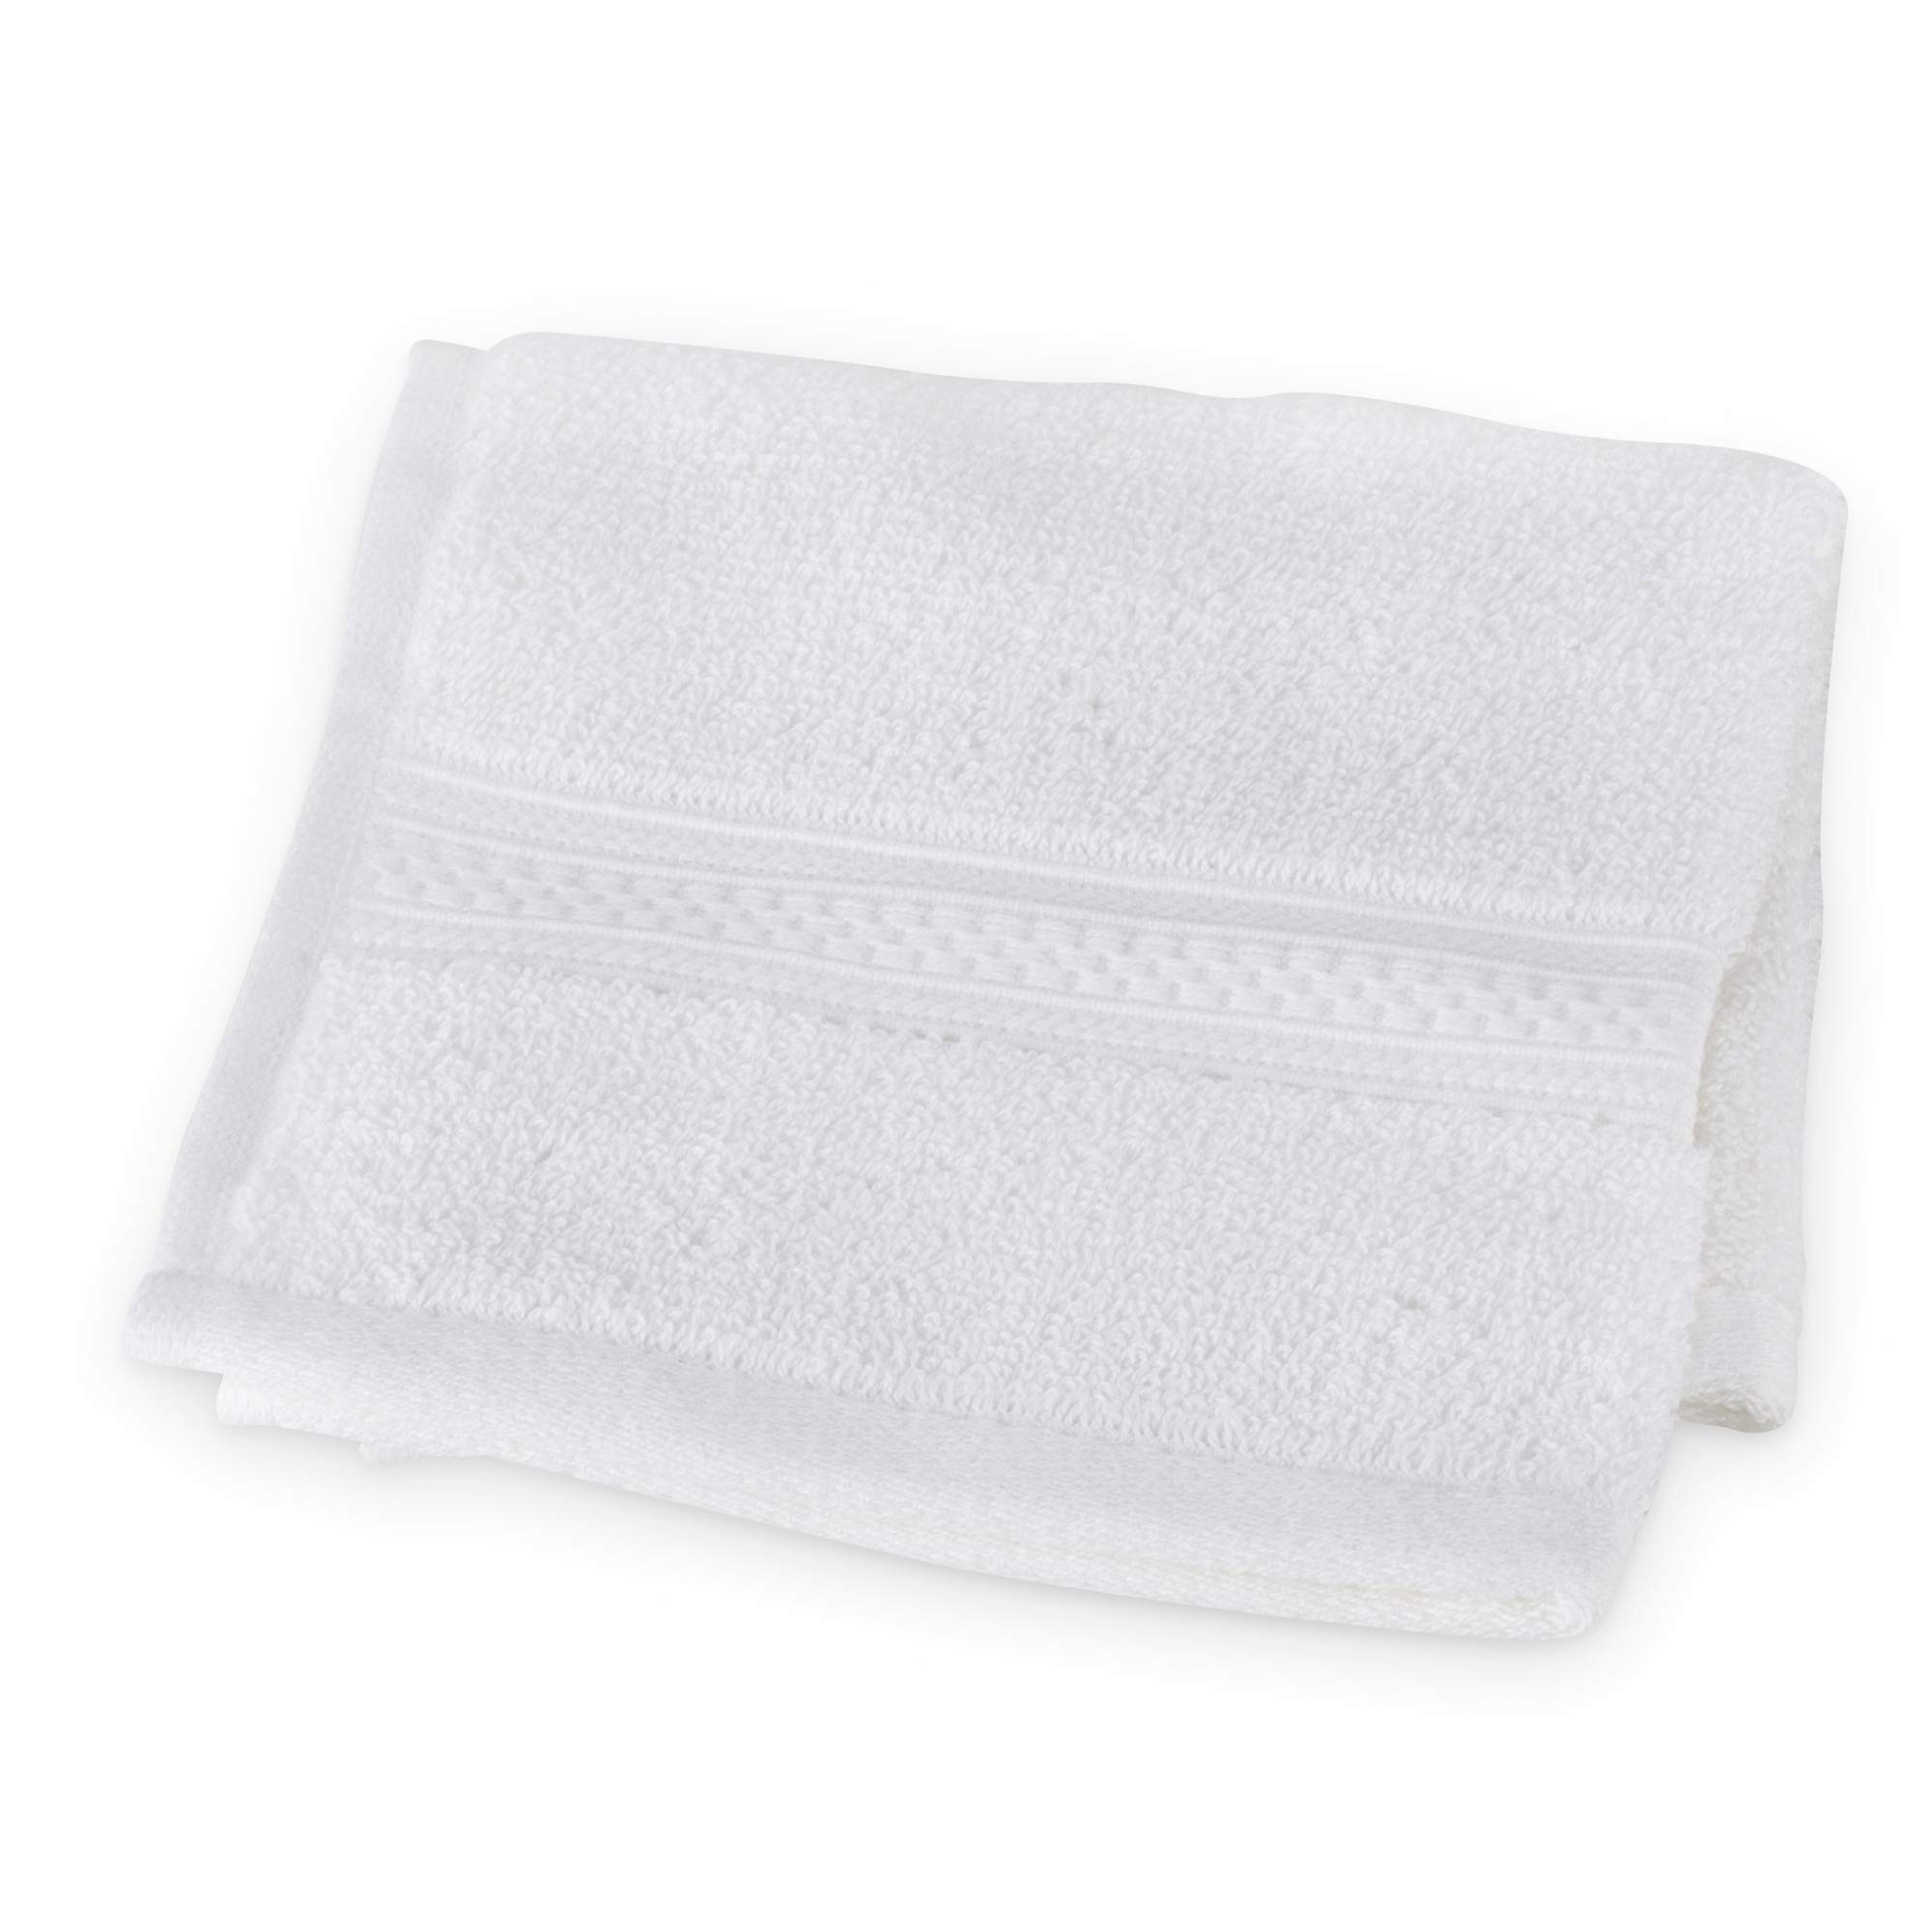 Dr. Mercola Organic Cotton Wash Cloth (White) Size 13x 13 Non GMO